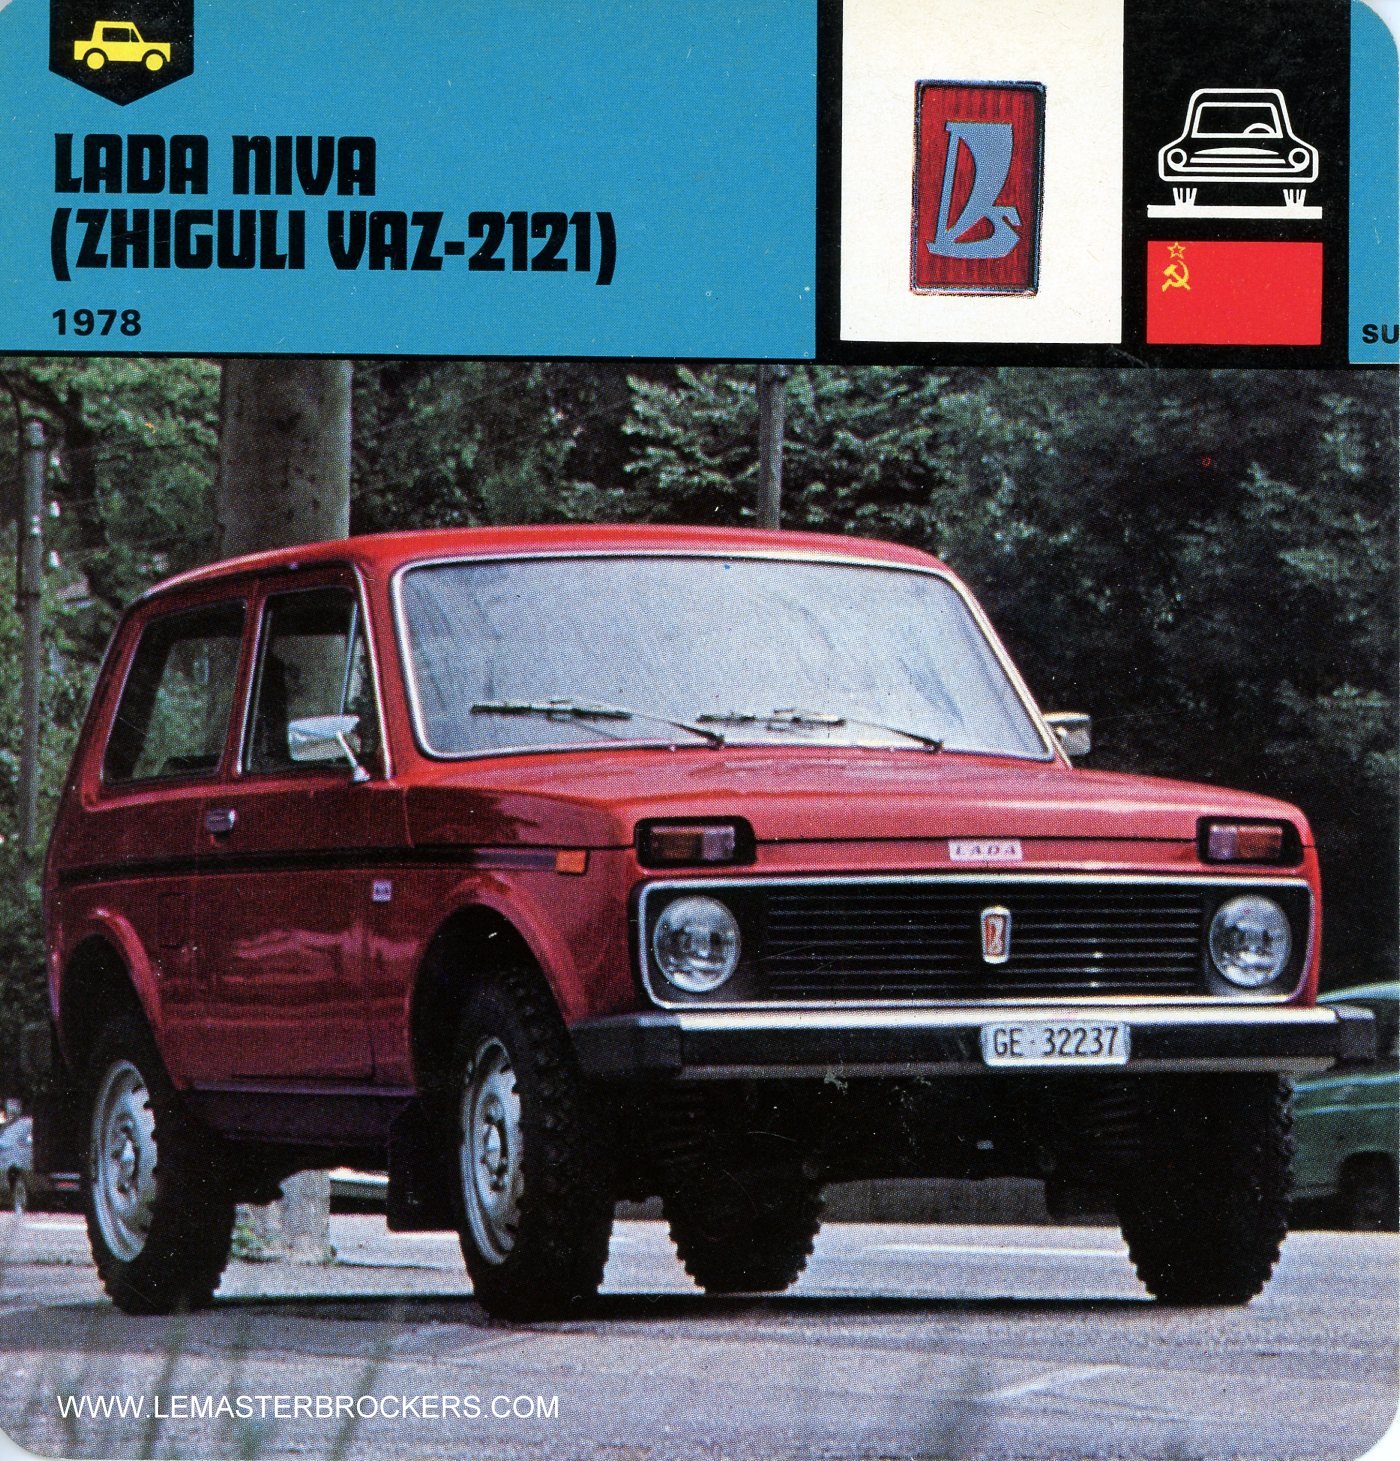 FICHE AUTO LADA NIVA ZHIGULI VAZ-2121 1978 LEMASTERBROCKERS